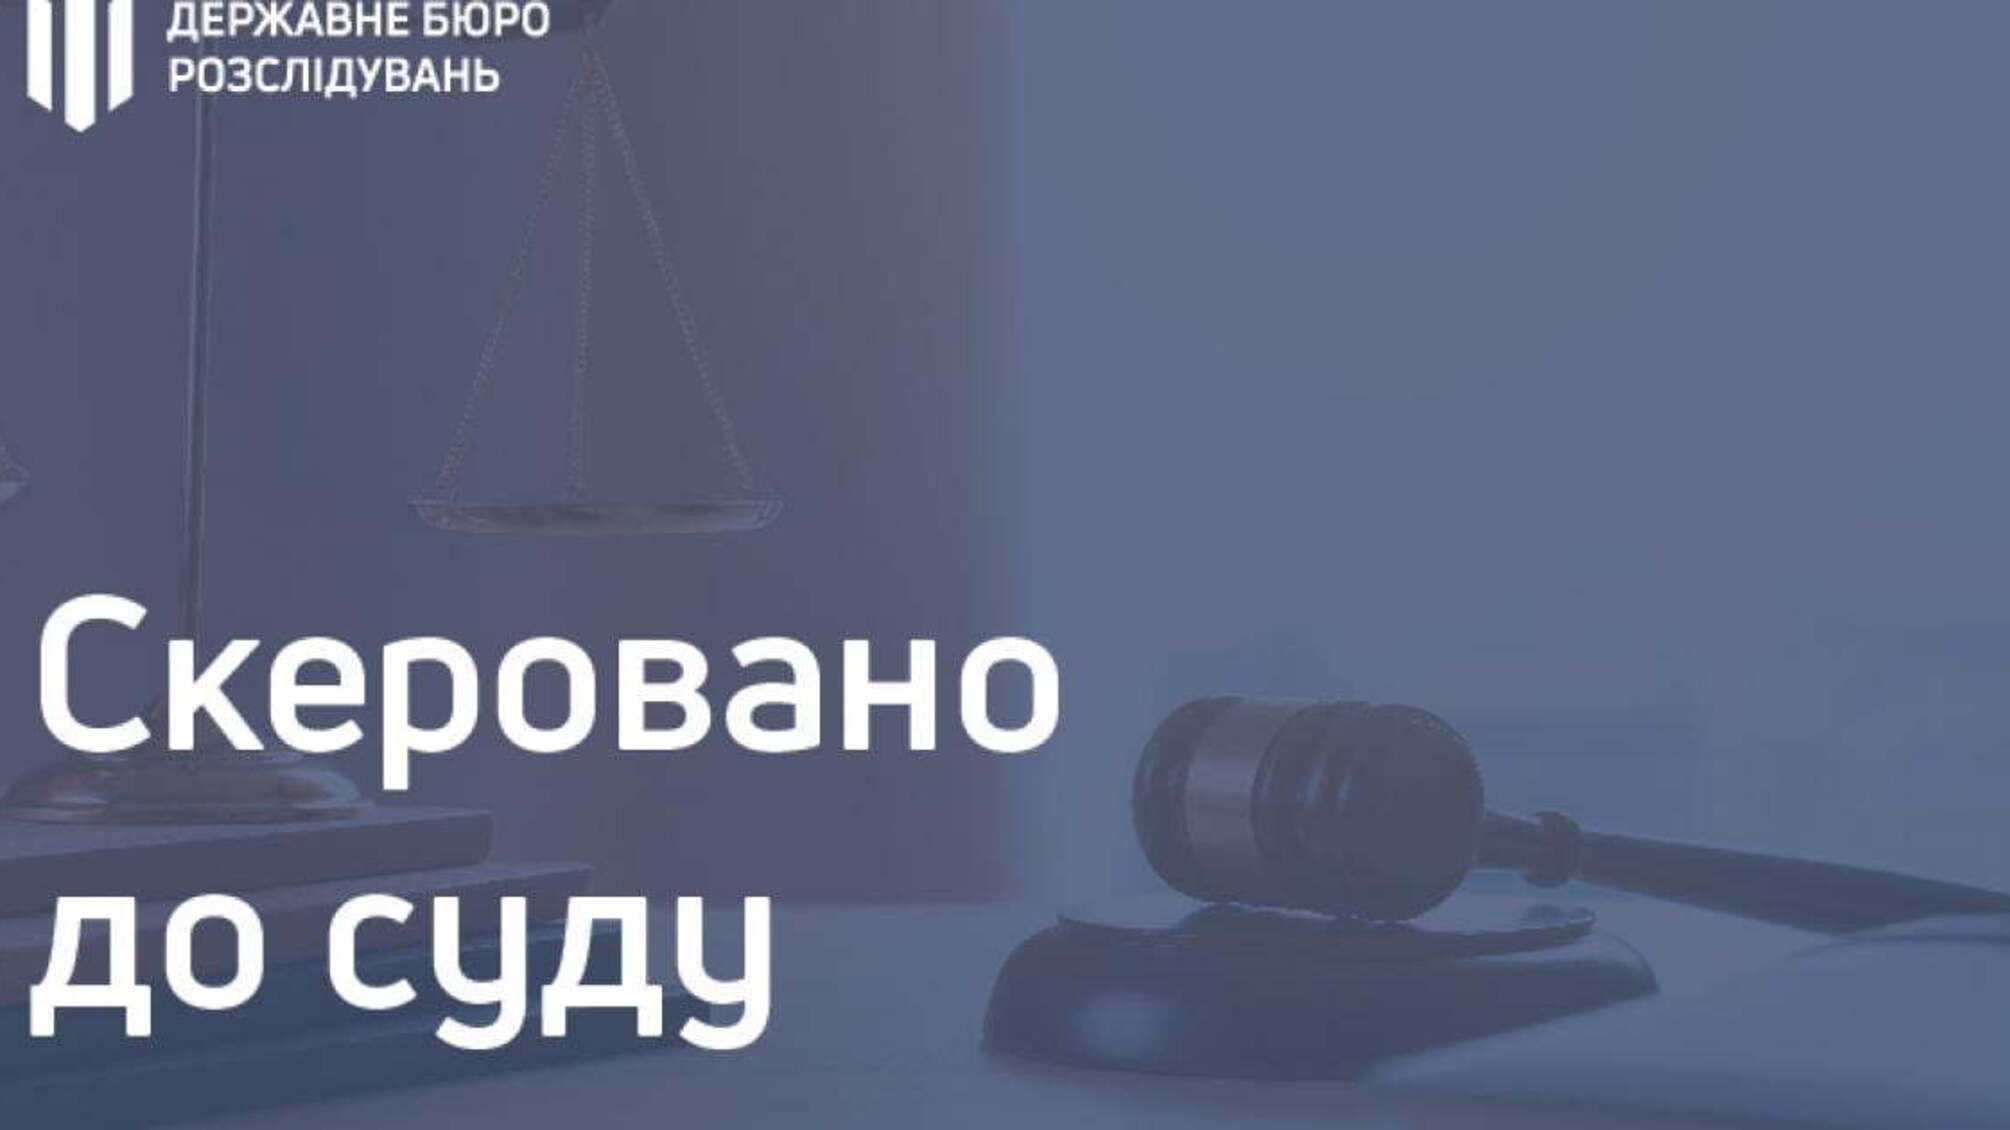  Розтрата бюджетних коштів на суму понад 700 000 гривень - посадовець Житомирської митниці постане перед судом  